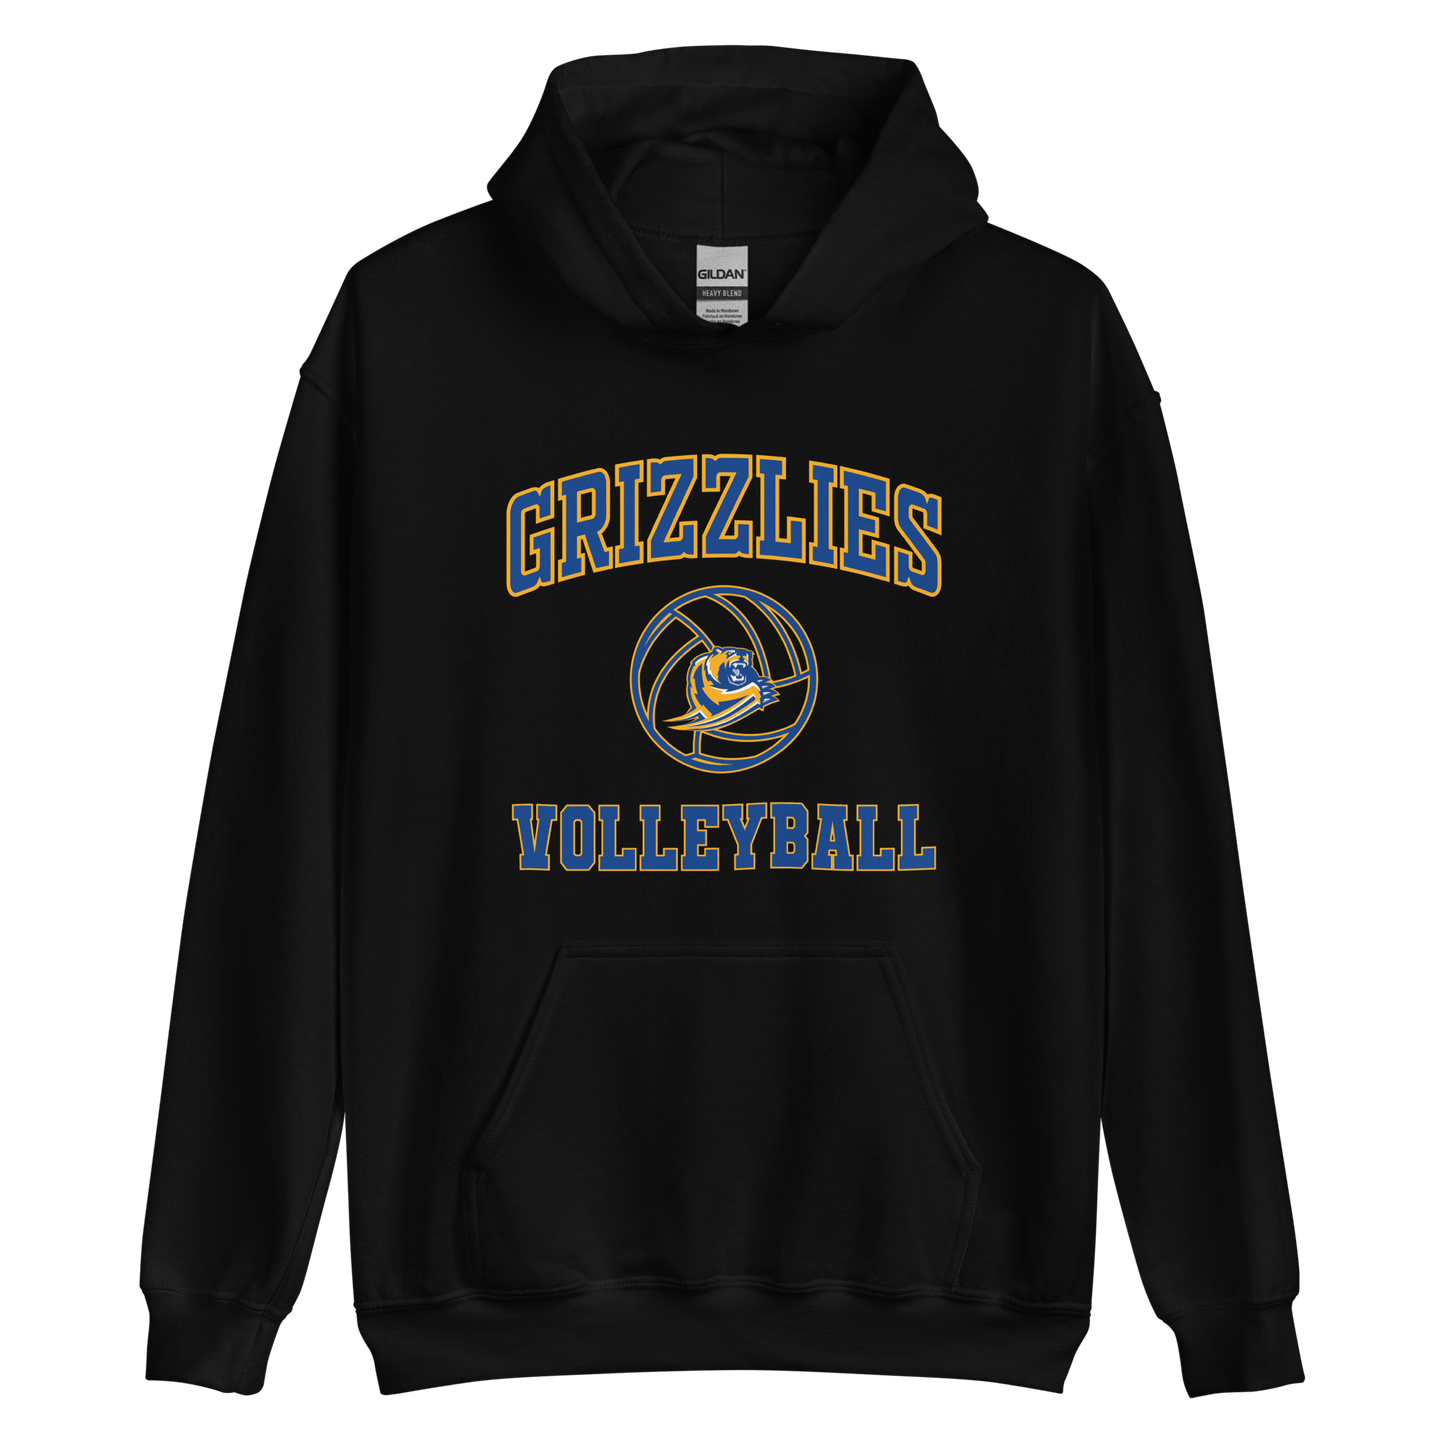 Grizzlies Volleyball Unisex Hoodie